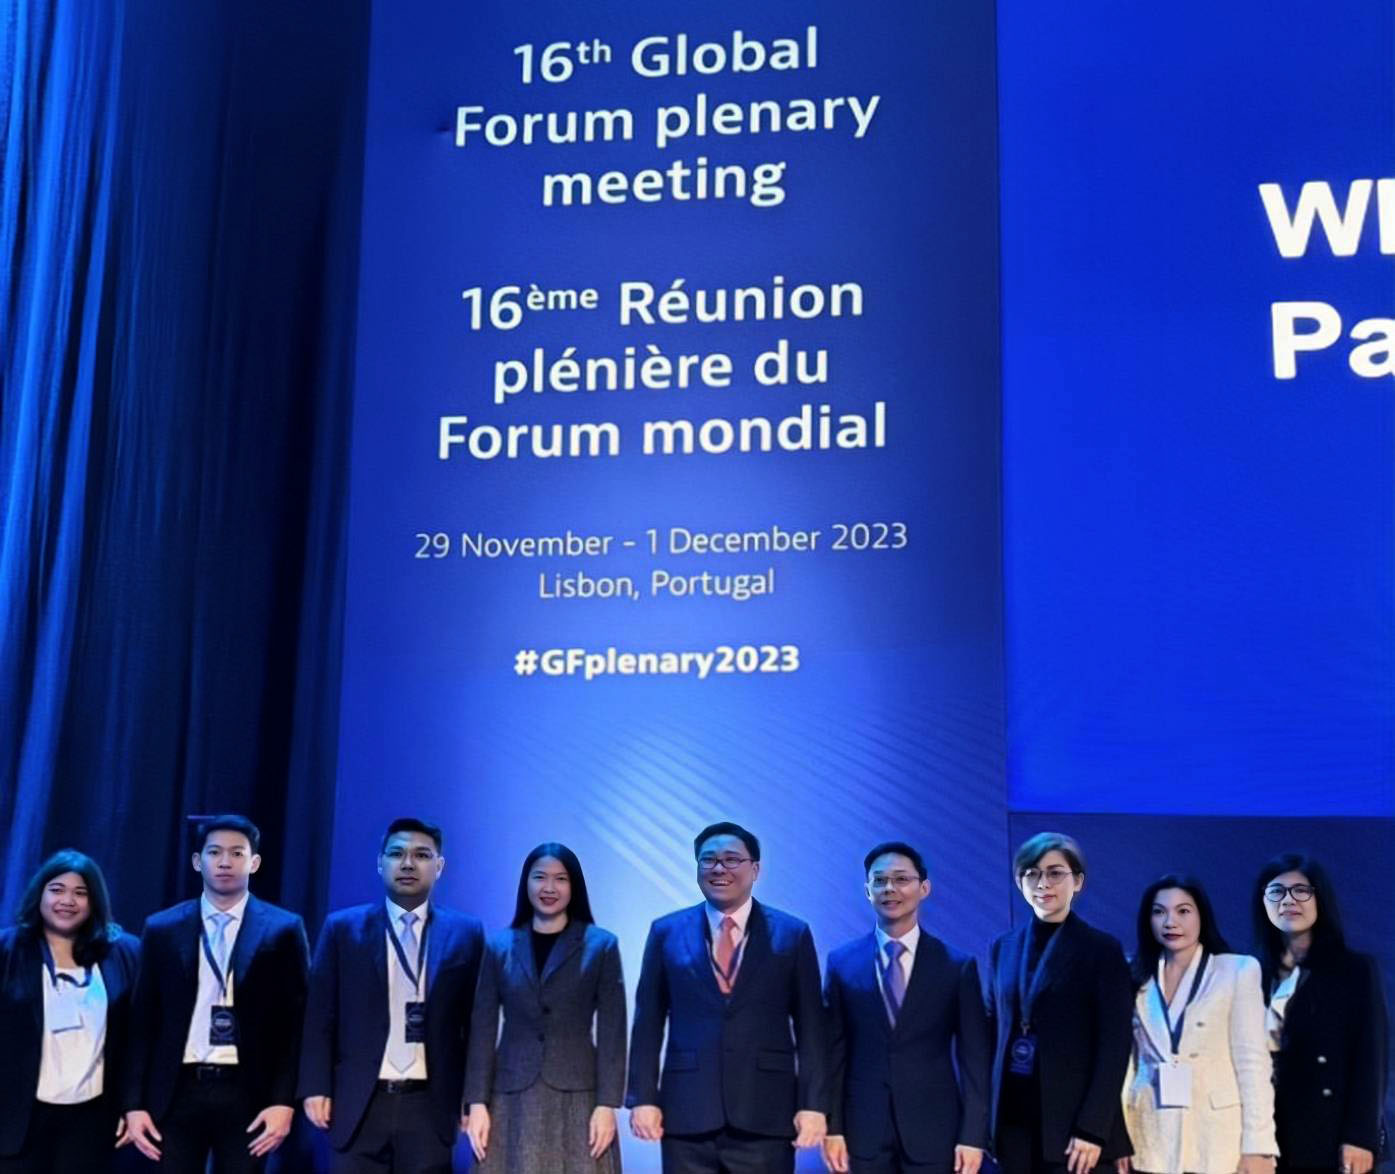 การประชุม The Global Forum Plenary Meeting ครั้งที่ 16 และการประชุม Asia Initiative ครั้งที่ 5 ภายใต้กรอบความร่วมมือด้านการยกระดับความโปร่งใสและการแลกเปลี่ยนข้อมูลทางภาษี (Global Forum on Transparency and Exchange of Information for Tax Purposes: Global Forum) ระหว่างวันที่ 28 พฤศจิกายน - 1 ธันวาคม 2566 ณ เมืองลิสบอน สาธารณรัฐโปรตุเกส